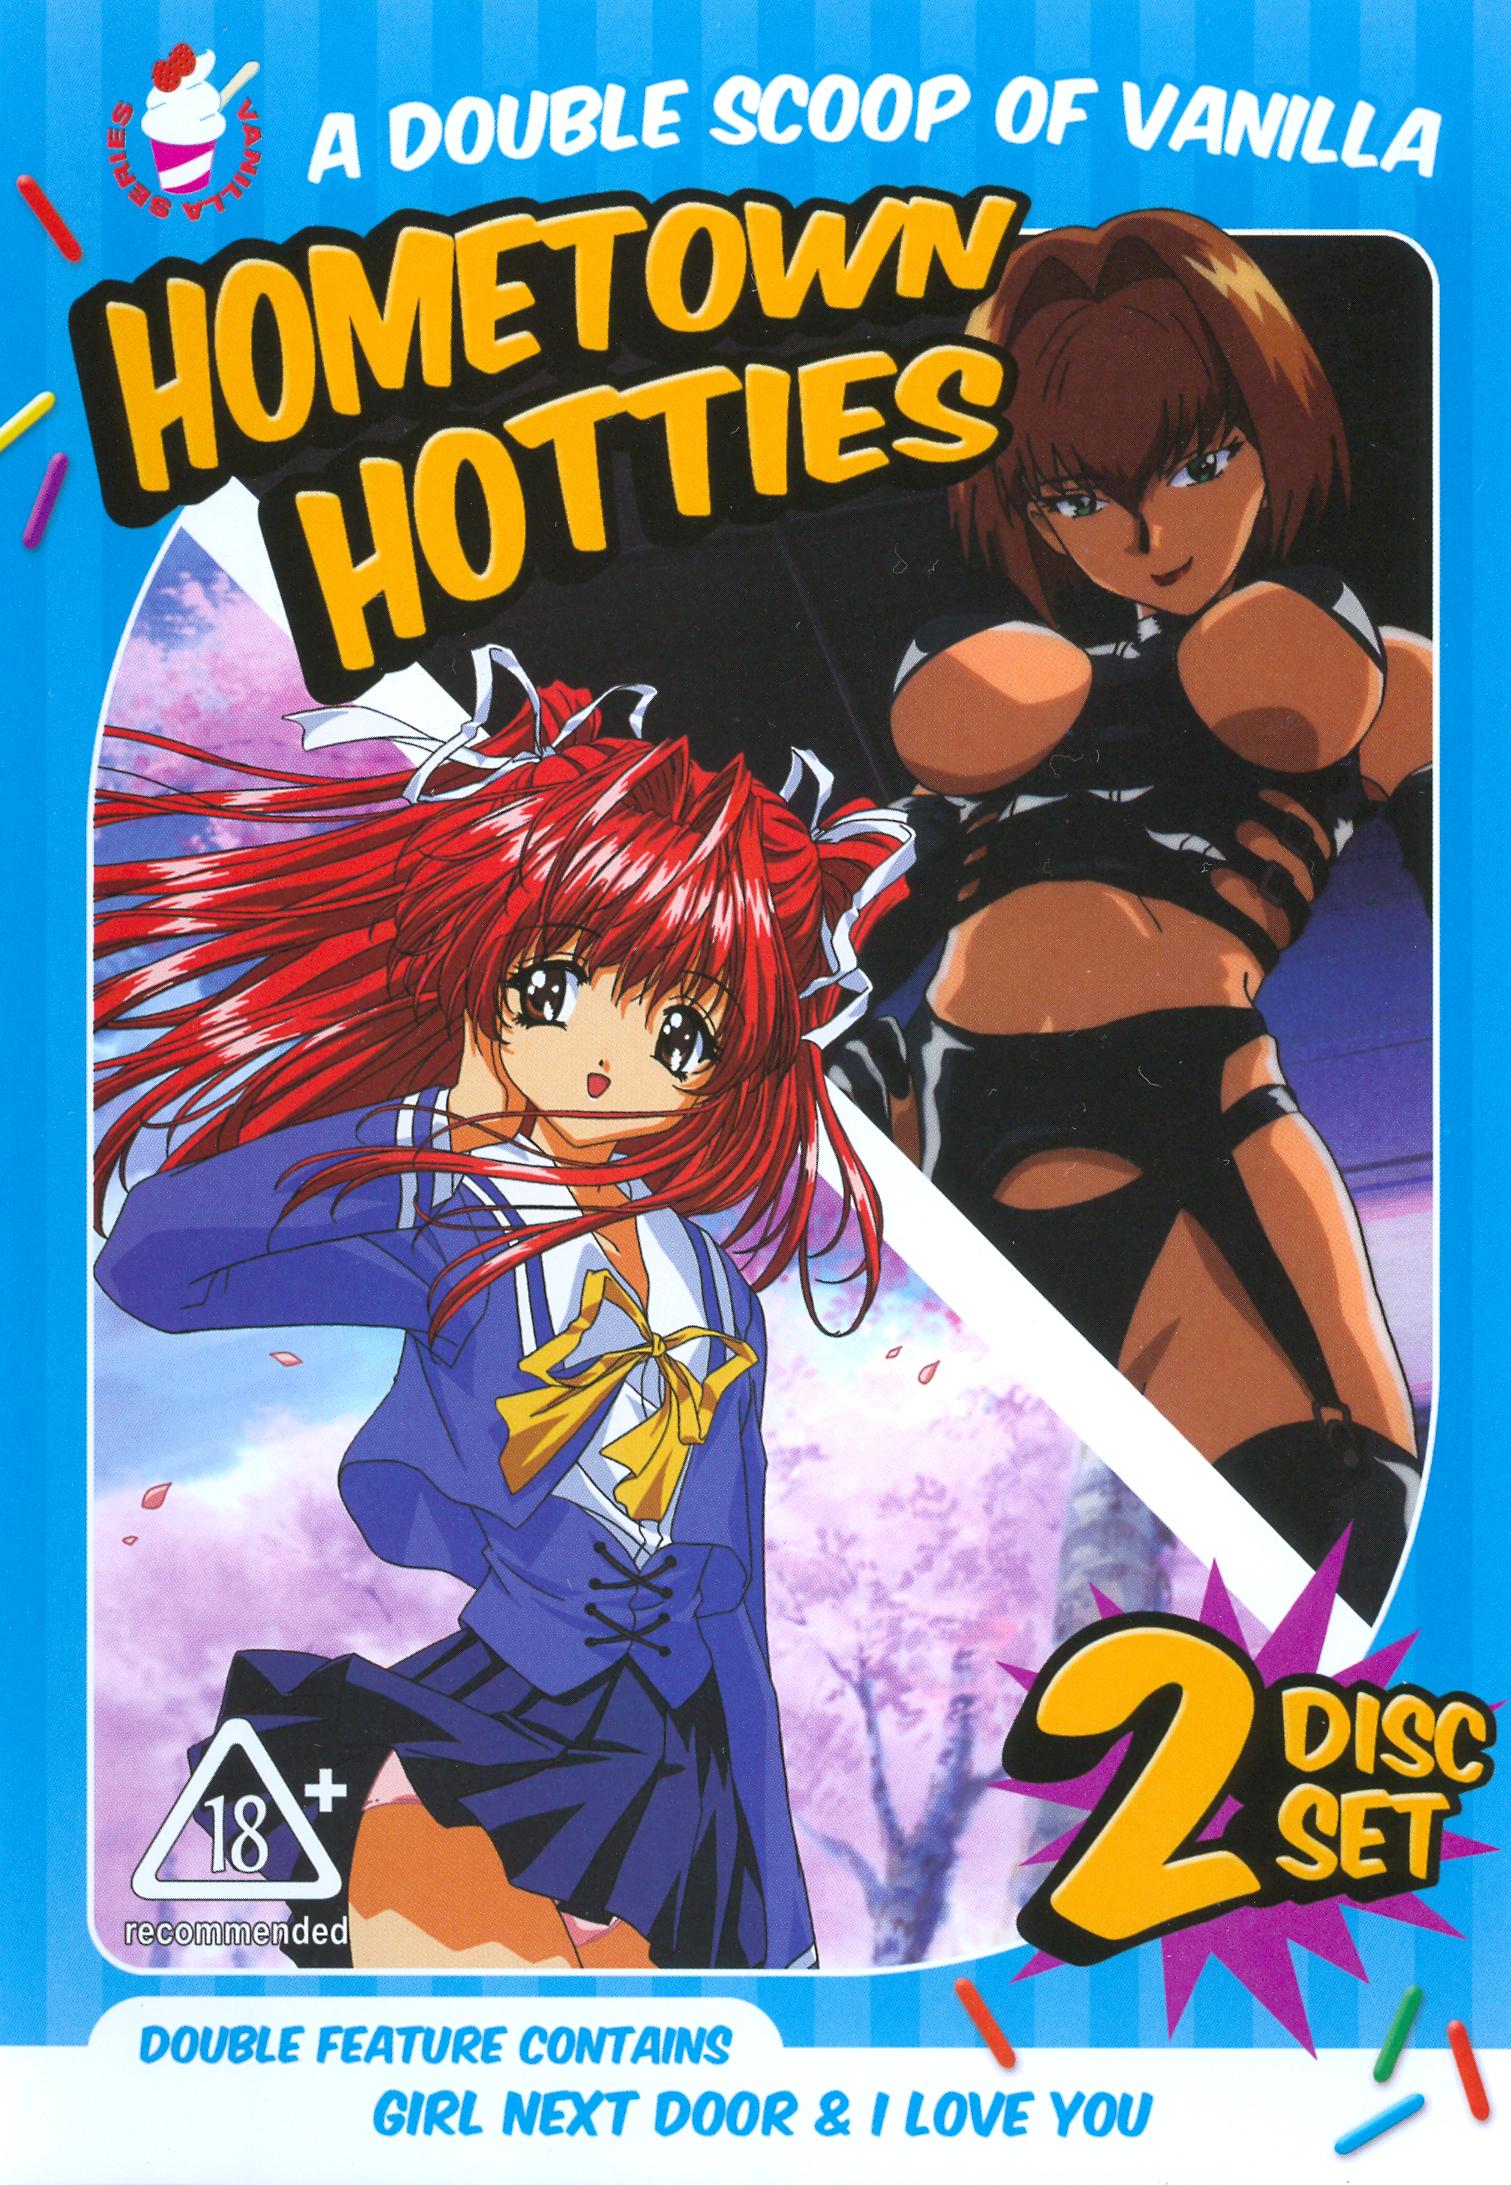 Hometown hotties manga